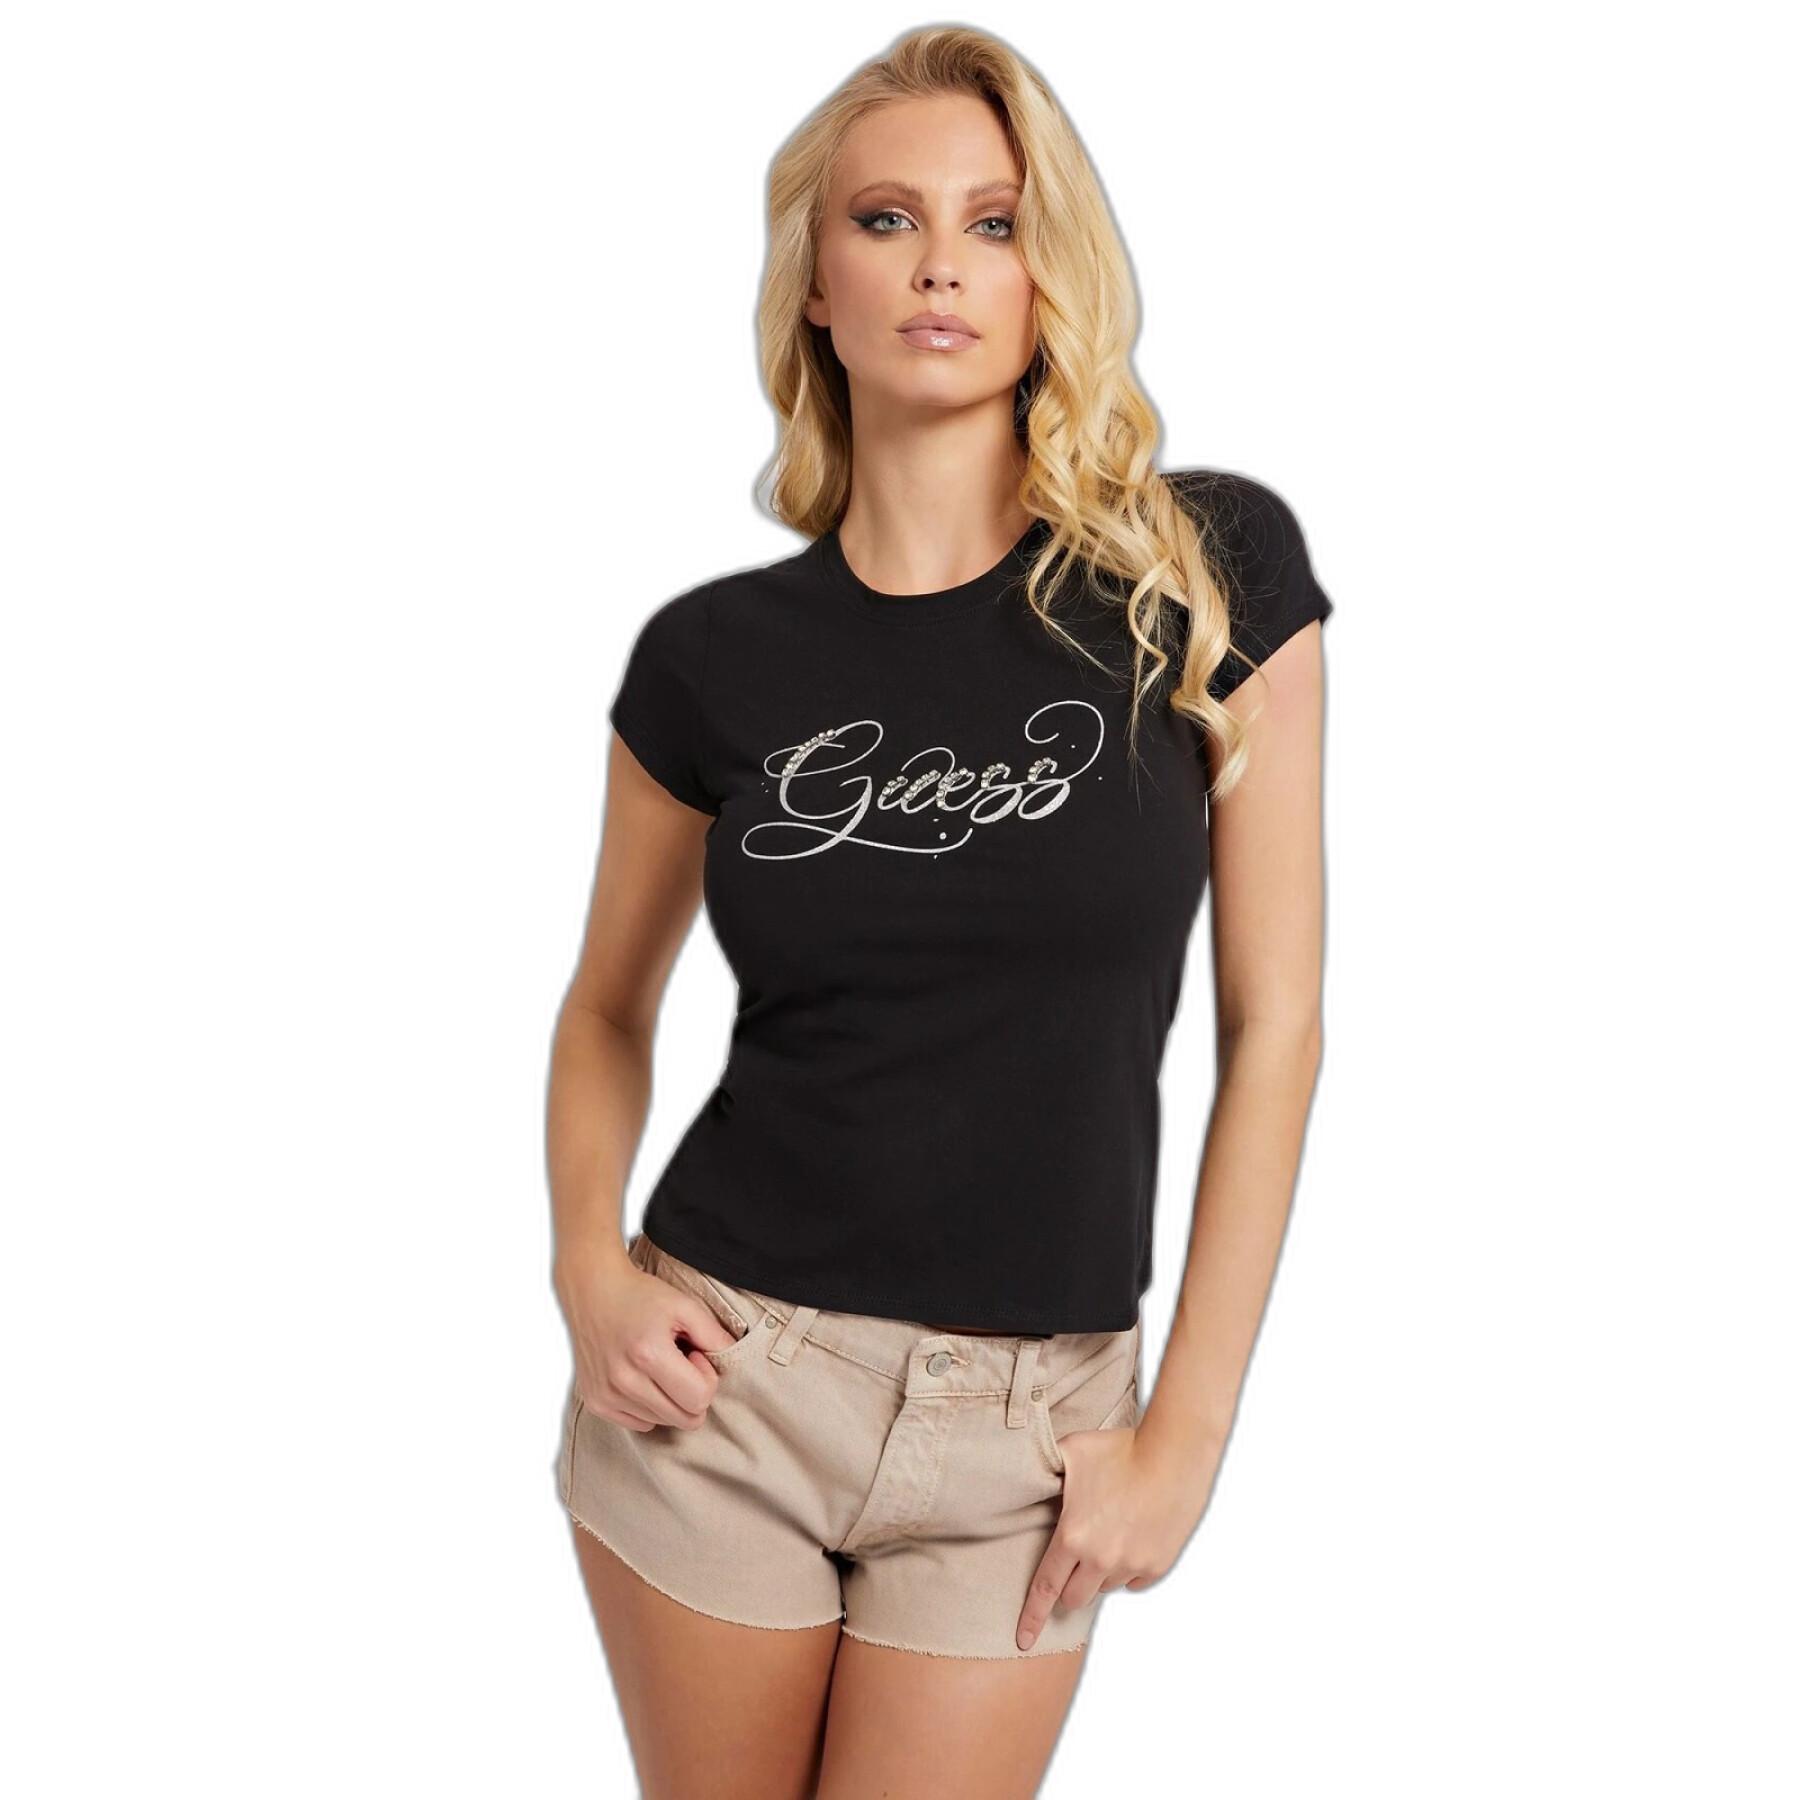 T-shirt à manches courtes femme Guess Glitzy R4